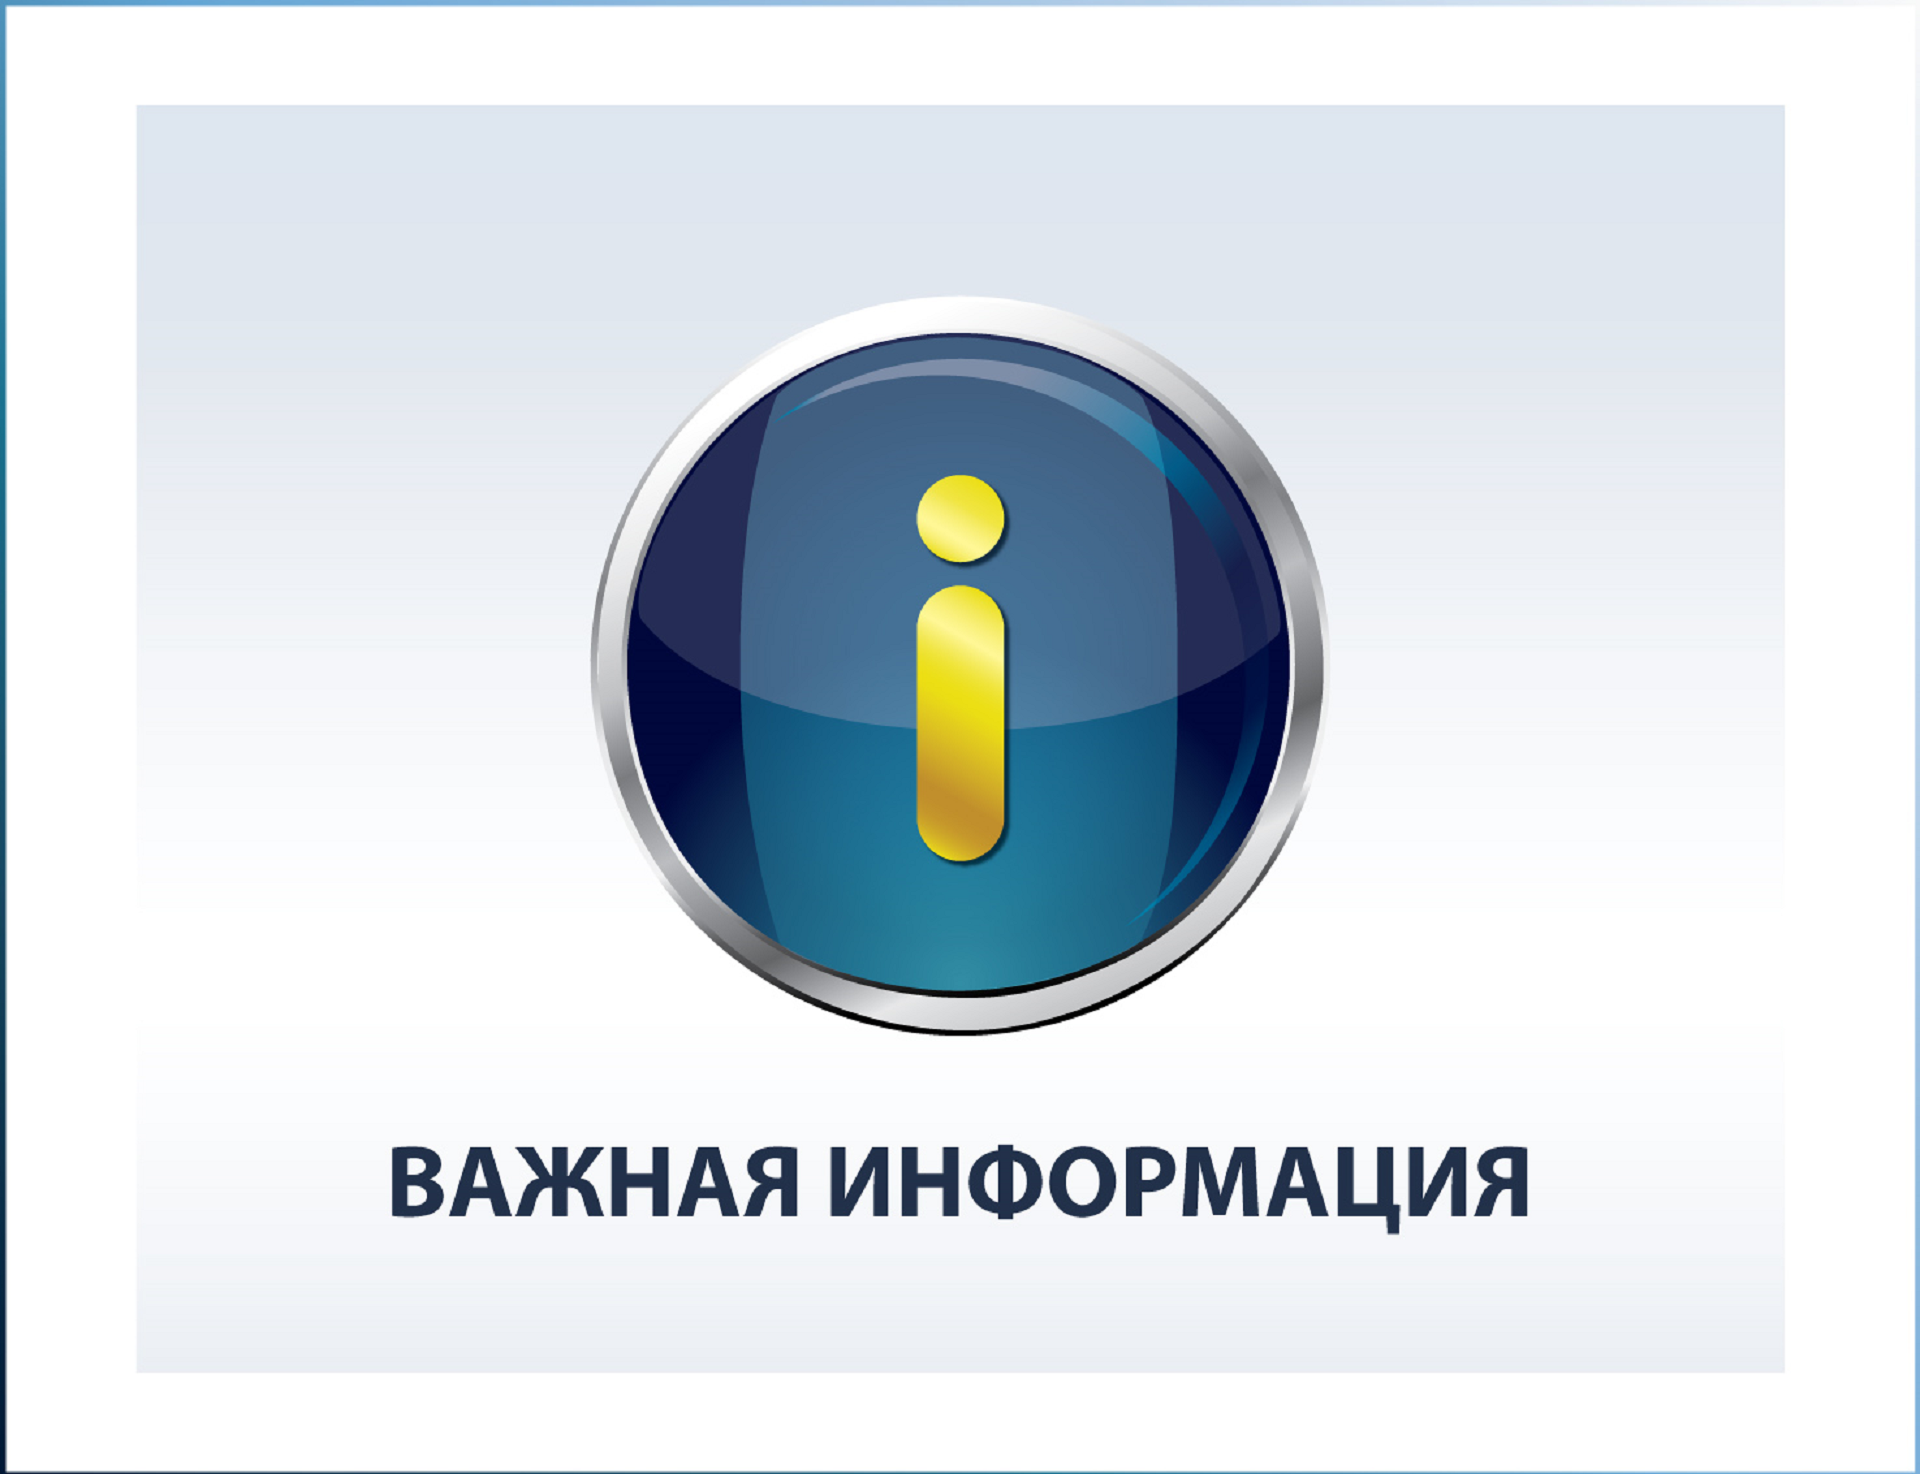 В ВятГУ идет отбор претендентов на назначение стипендий Правительства РФ 